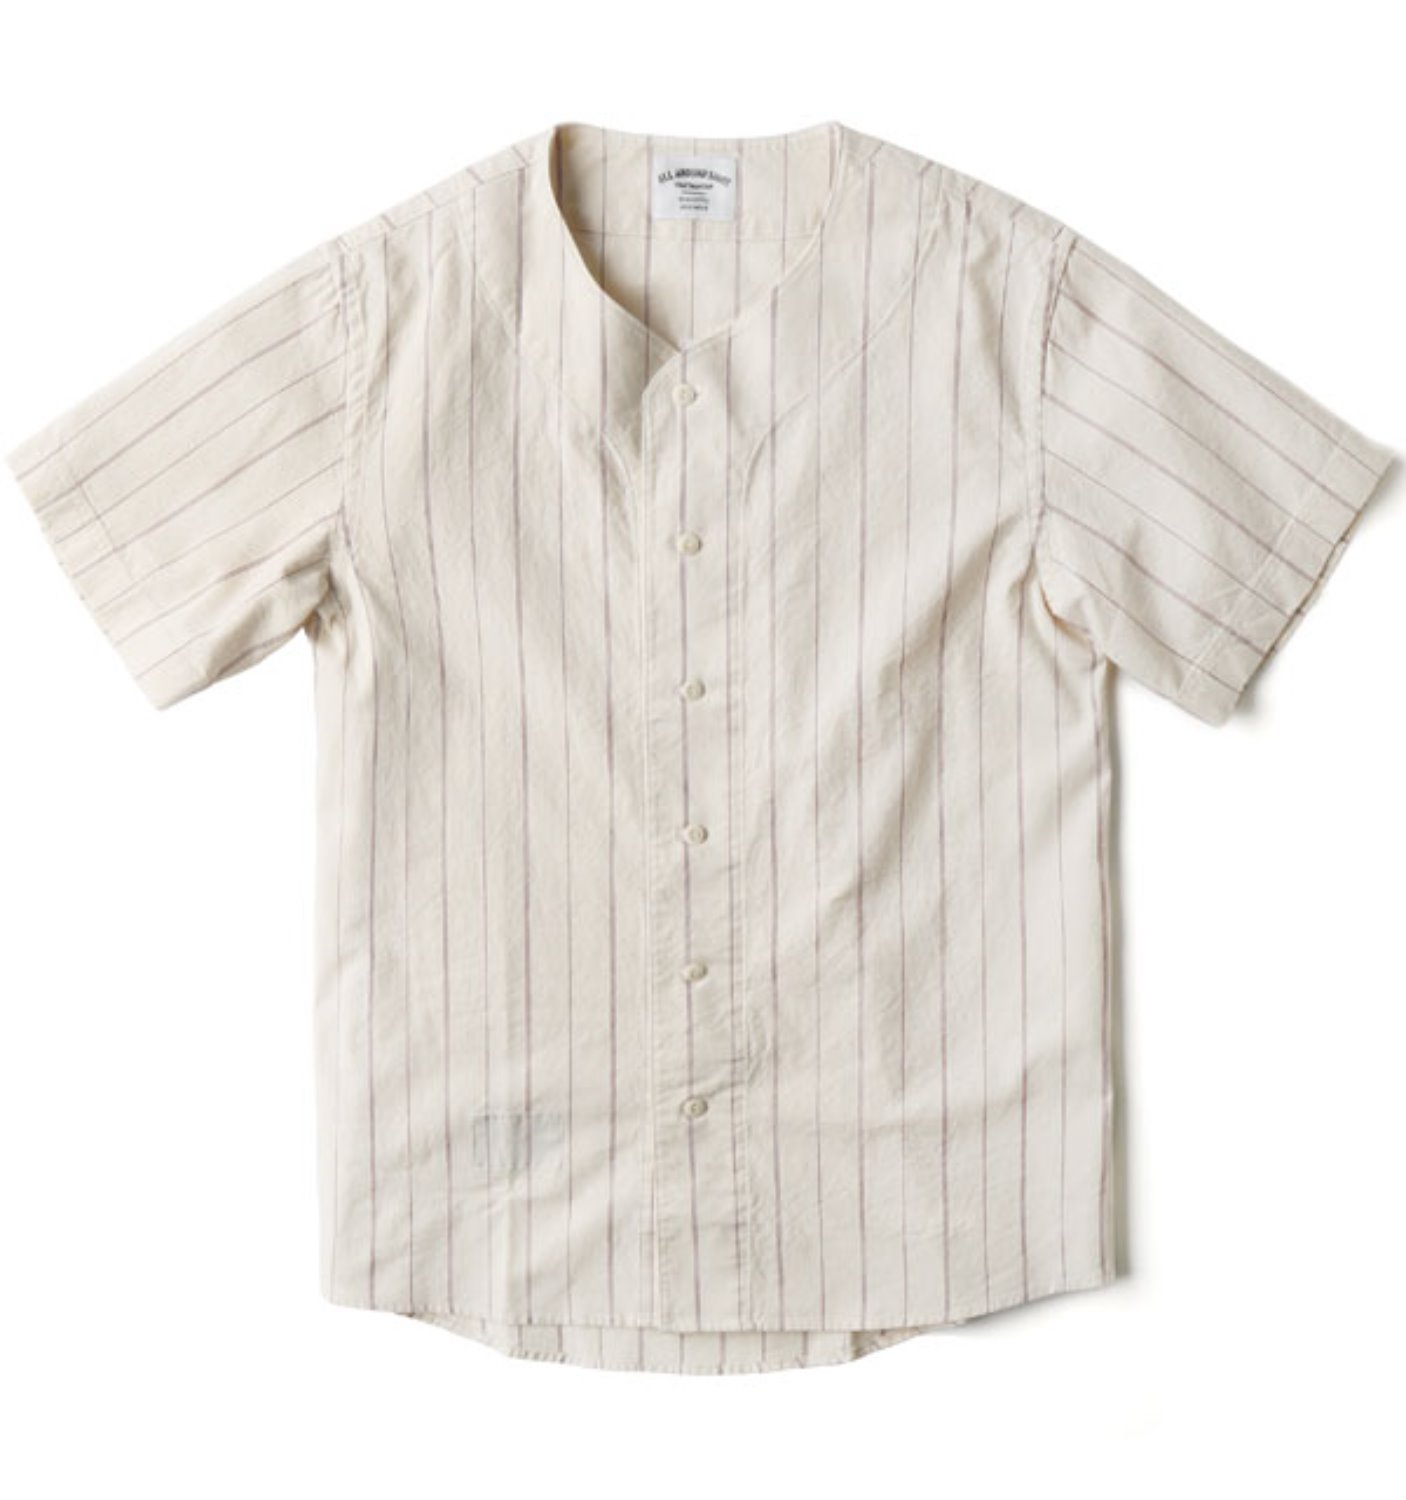 SC-BS01 Baseball Shirt WINE (Sculp Exclusive)